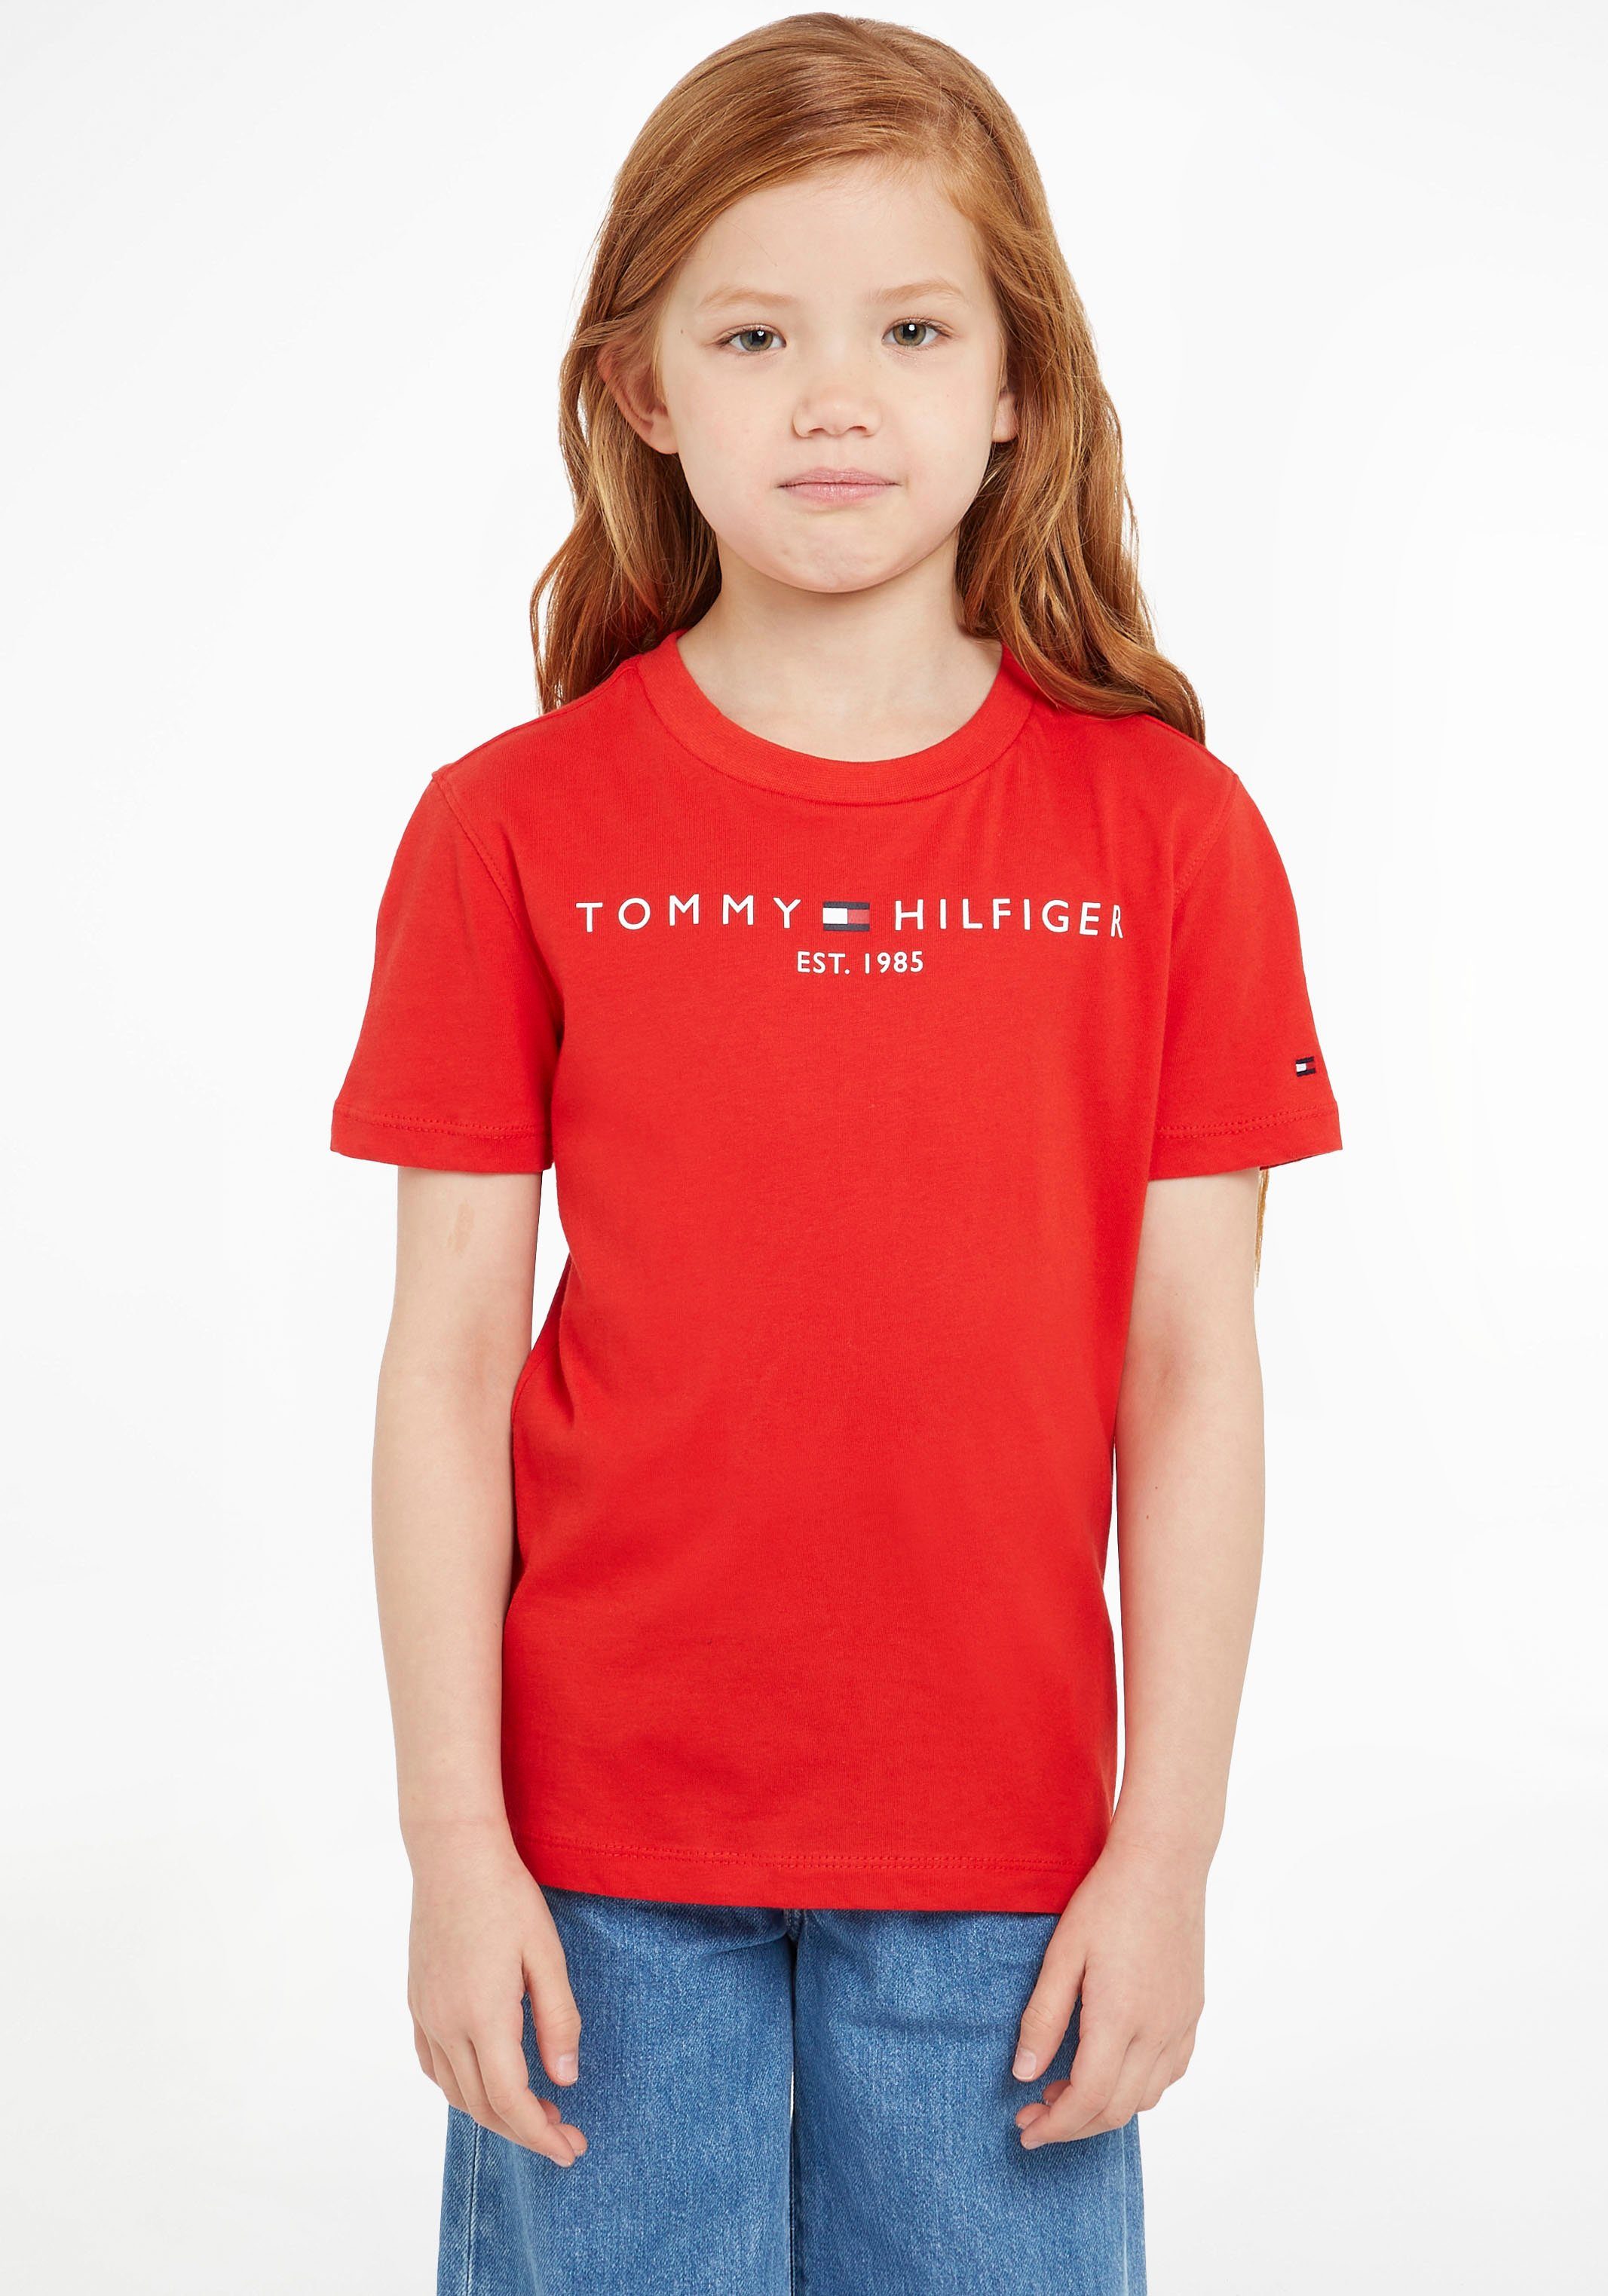 Tommy Hilfiger T-Shirt ESSENTIAL Junior Mädchen MiniMe,für Jungen und Kids TEE Kinder